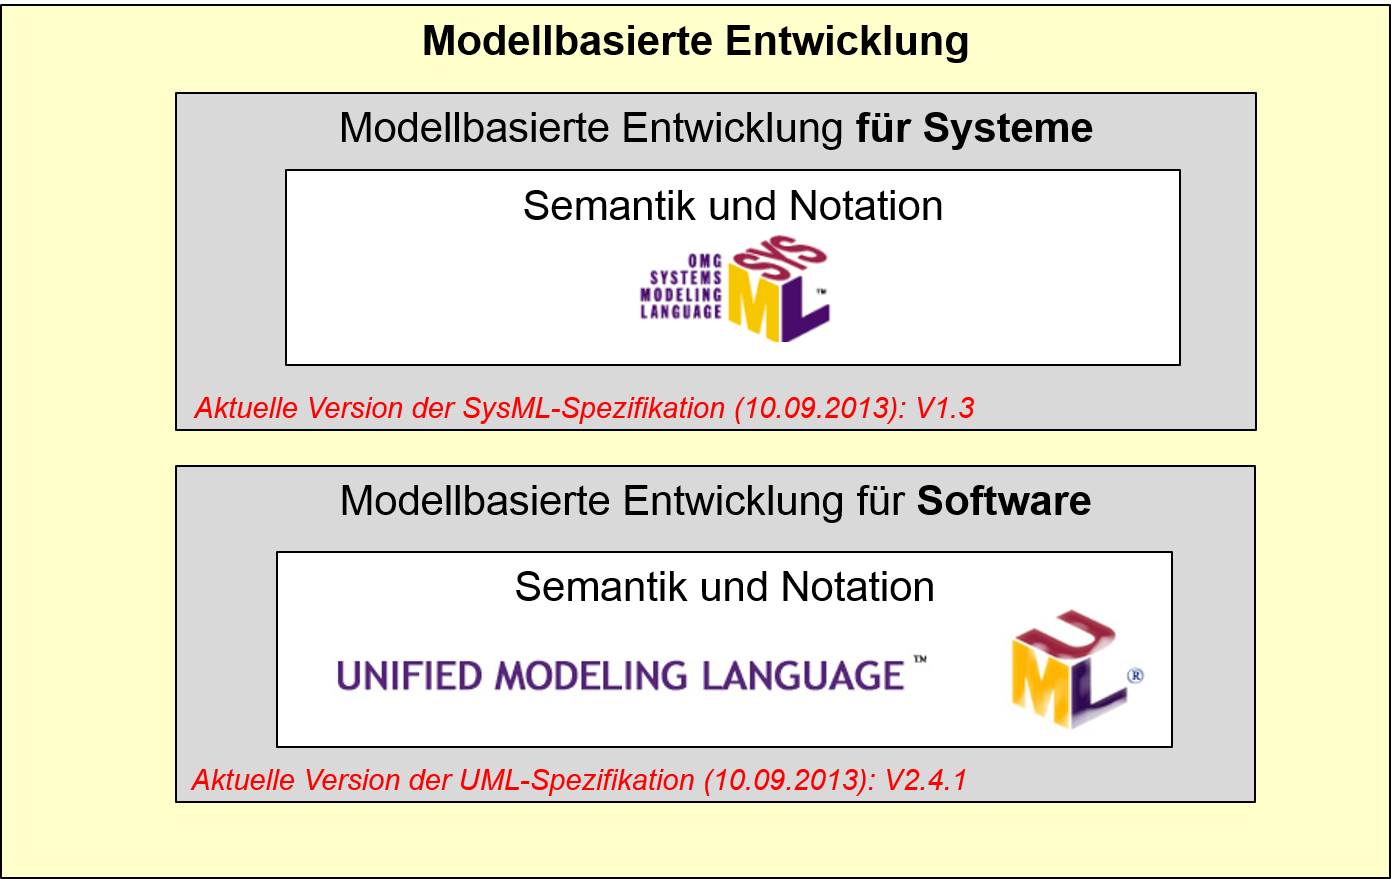 Modellbasierte Entwicklung mit SysML und UML